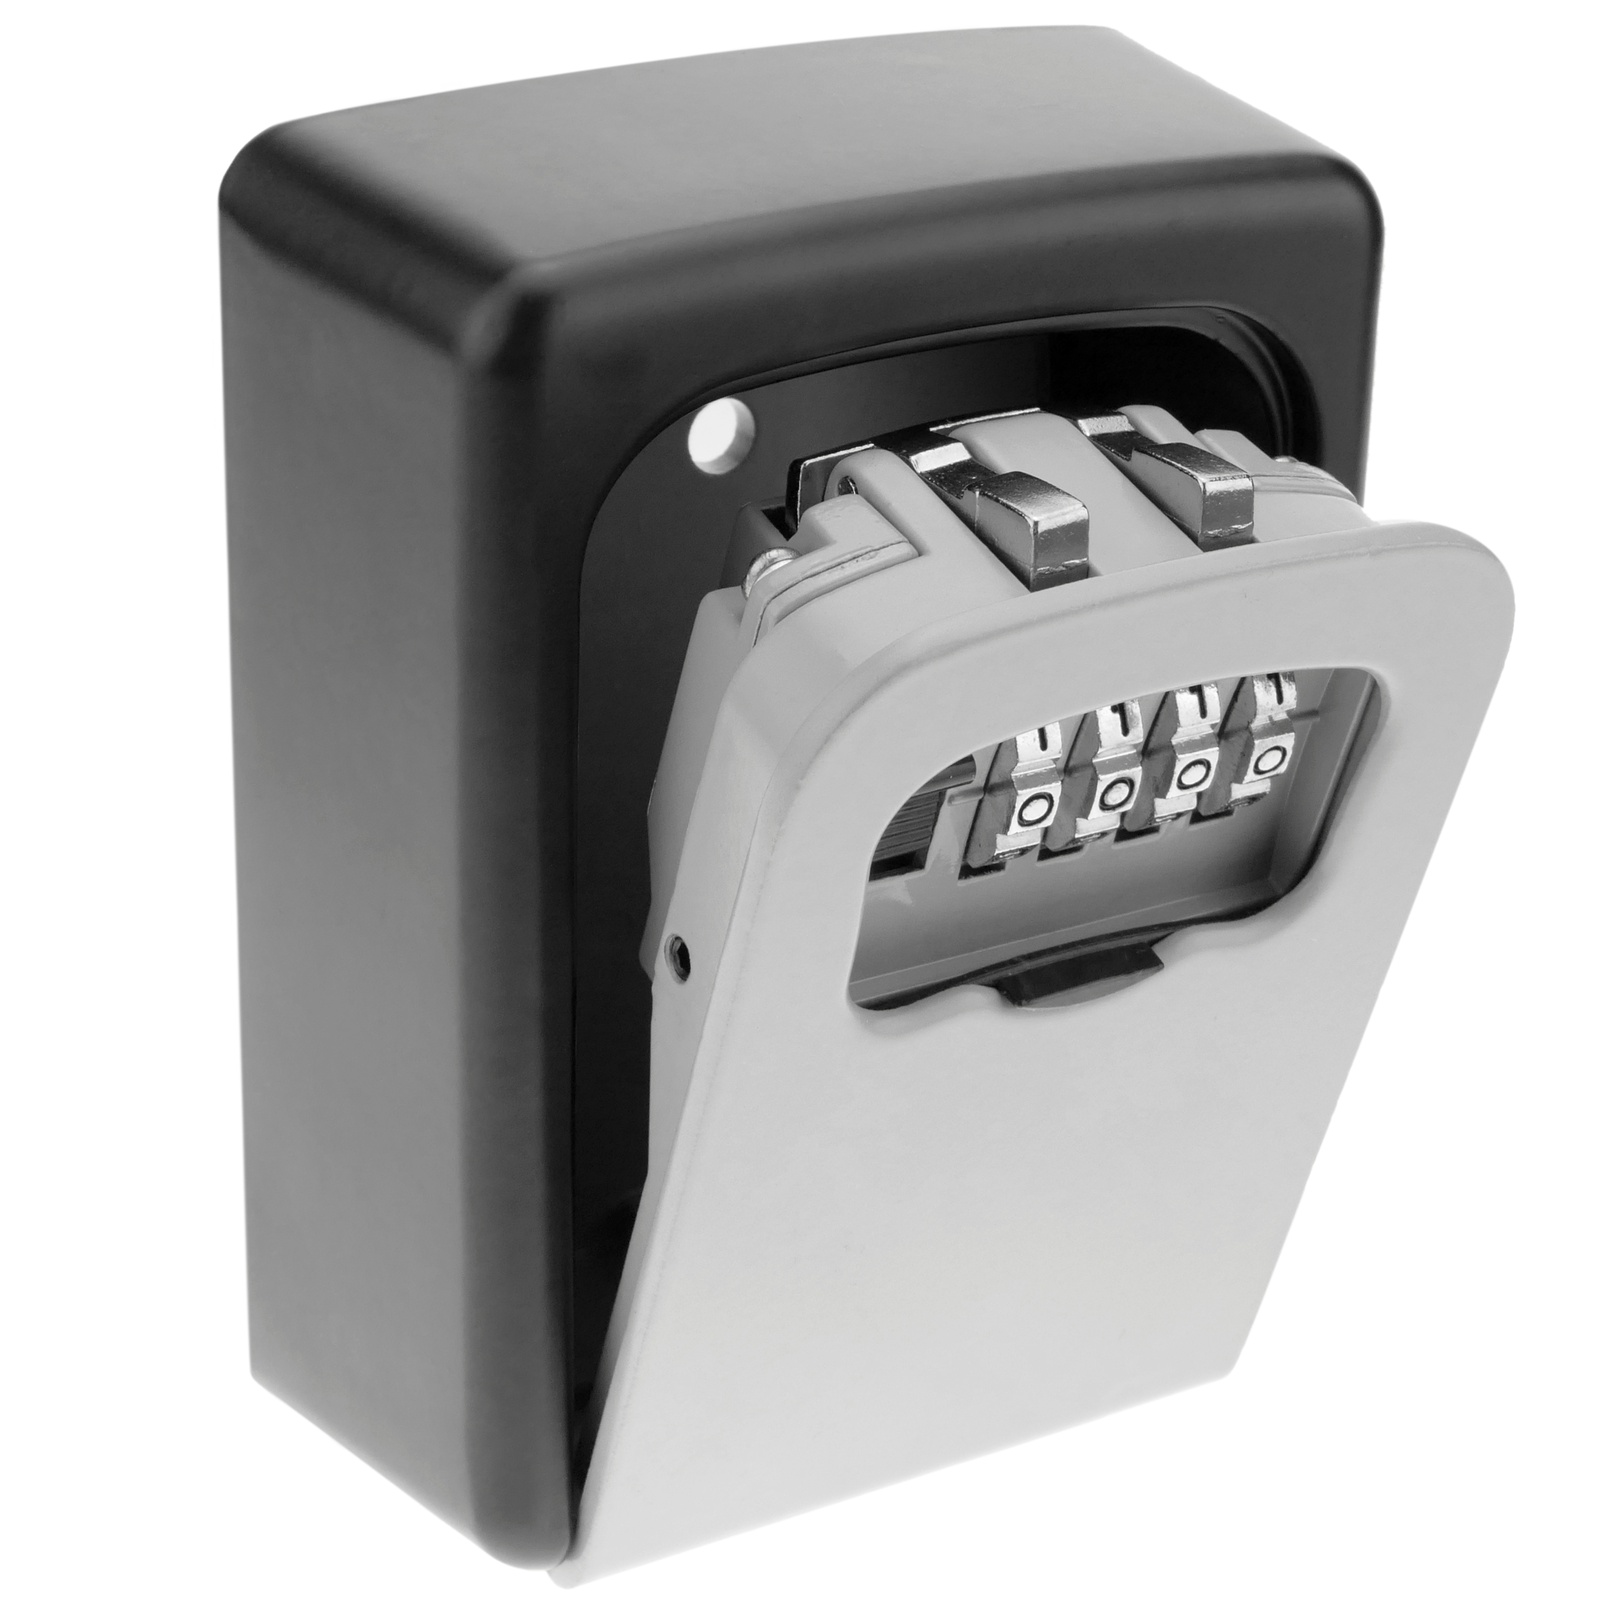 Cassetta di sicurezza per chiave serrature con combinazione di 4 cifre